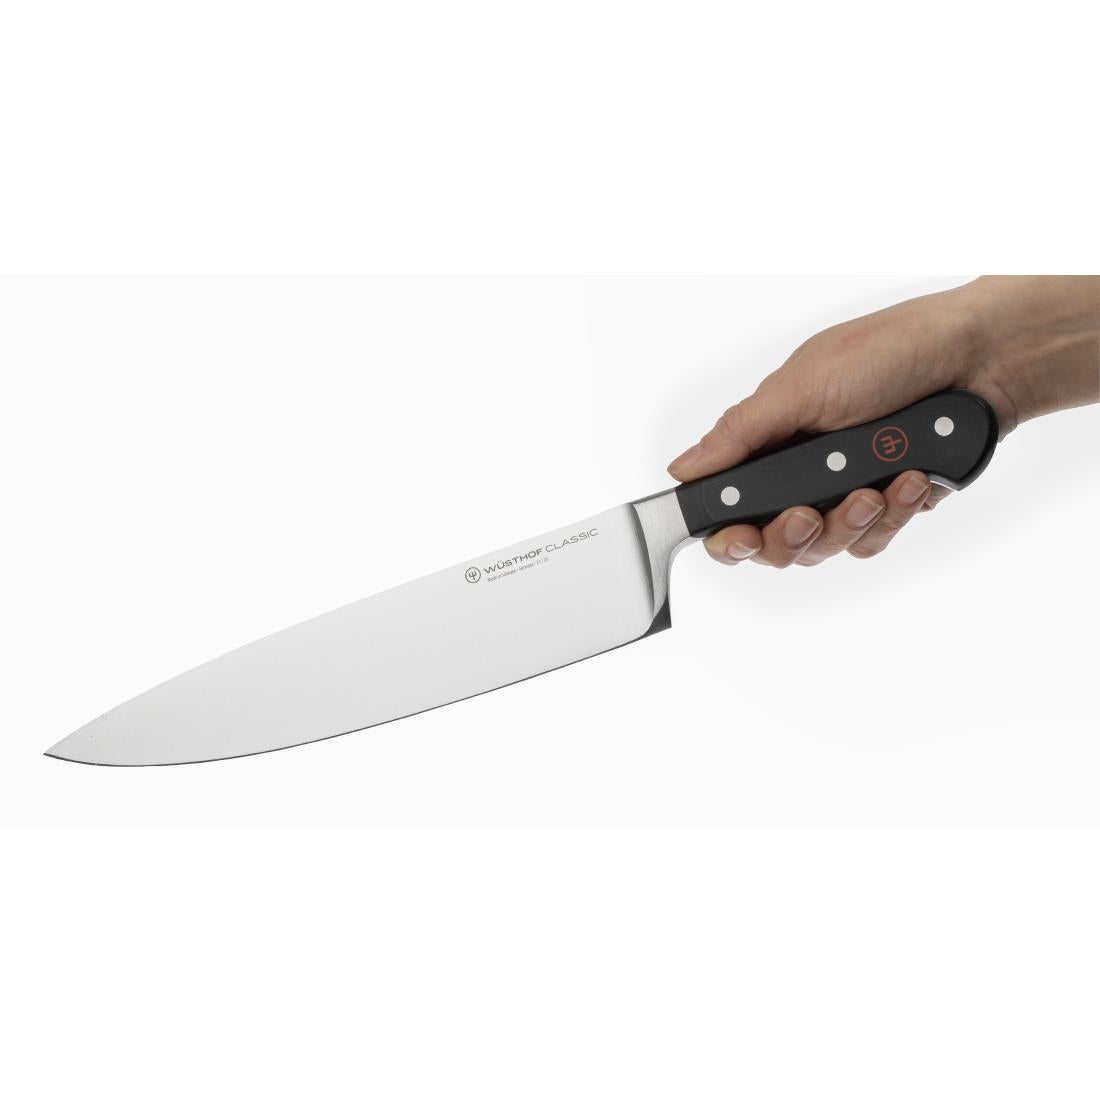 C909 Wusthof Chefs Knife 23cm